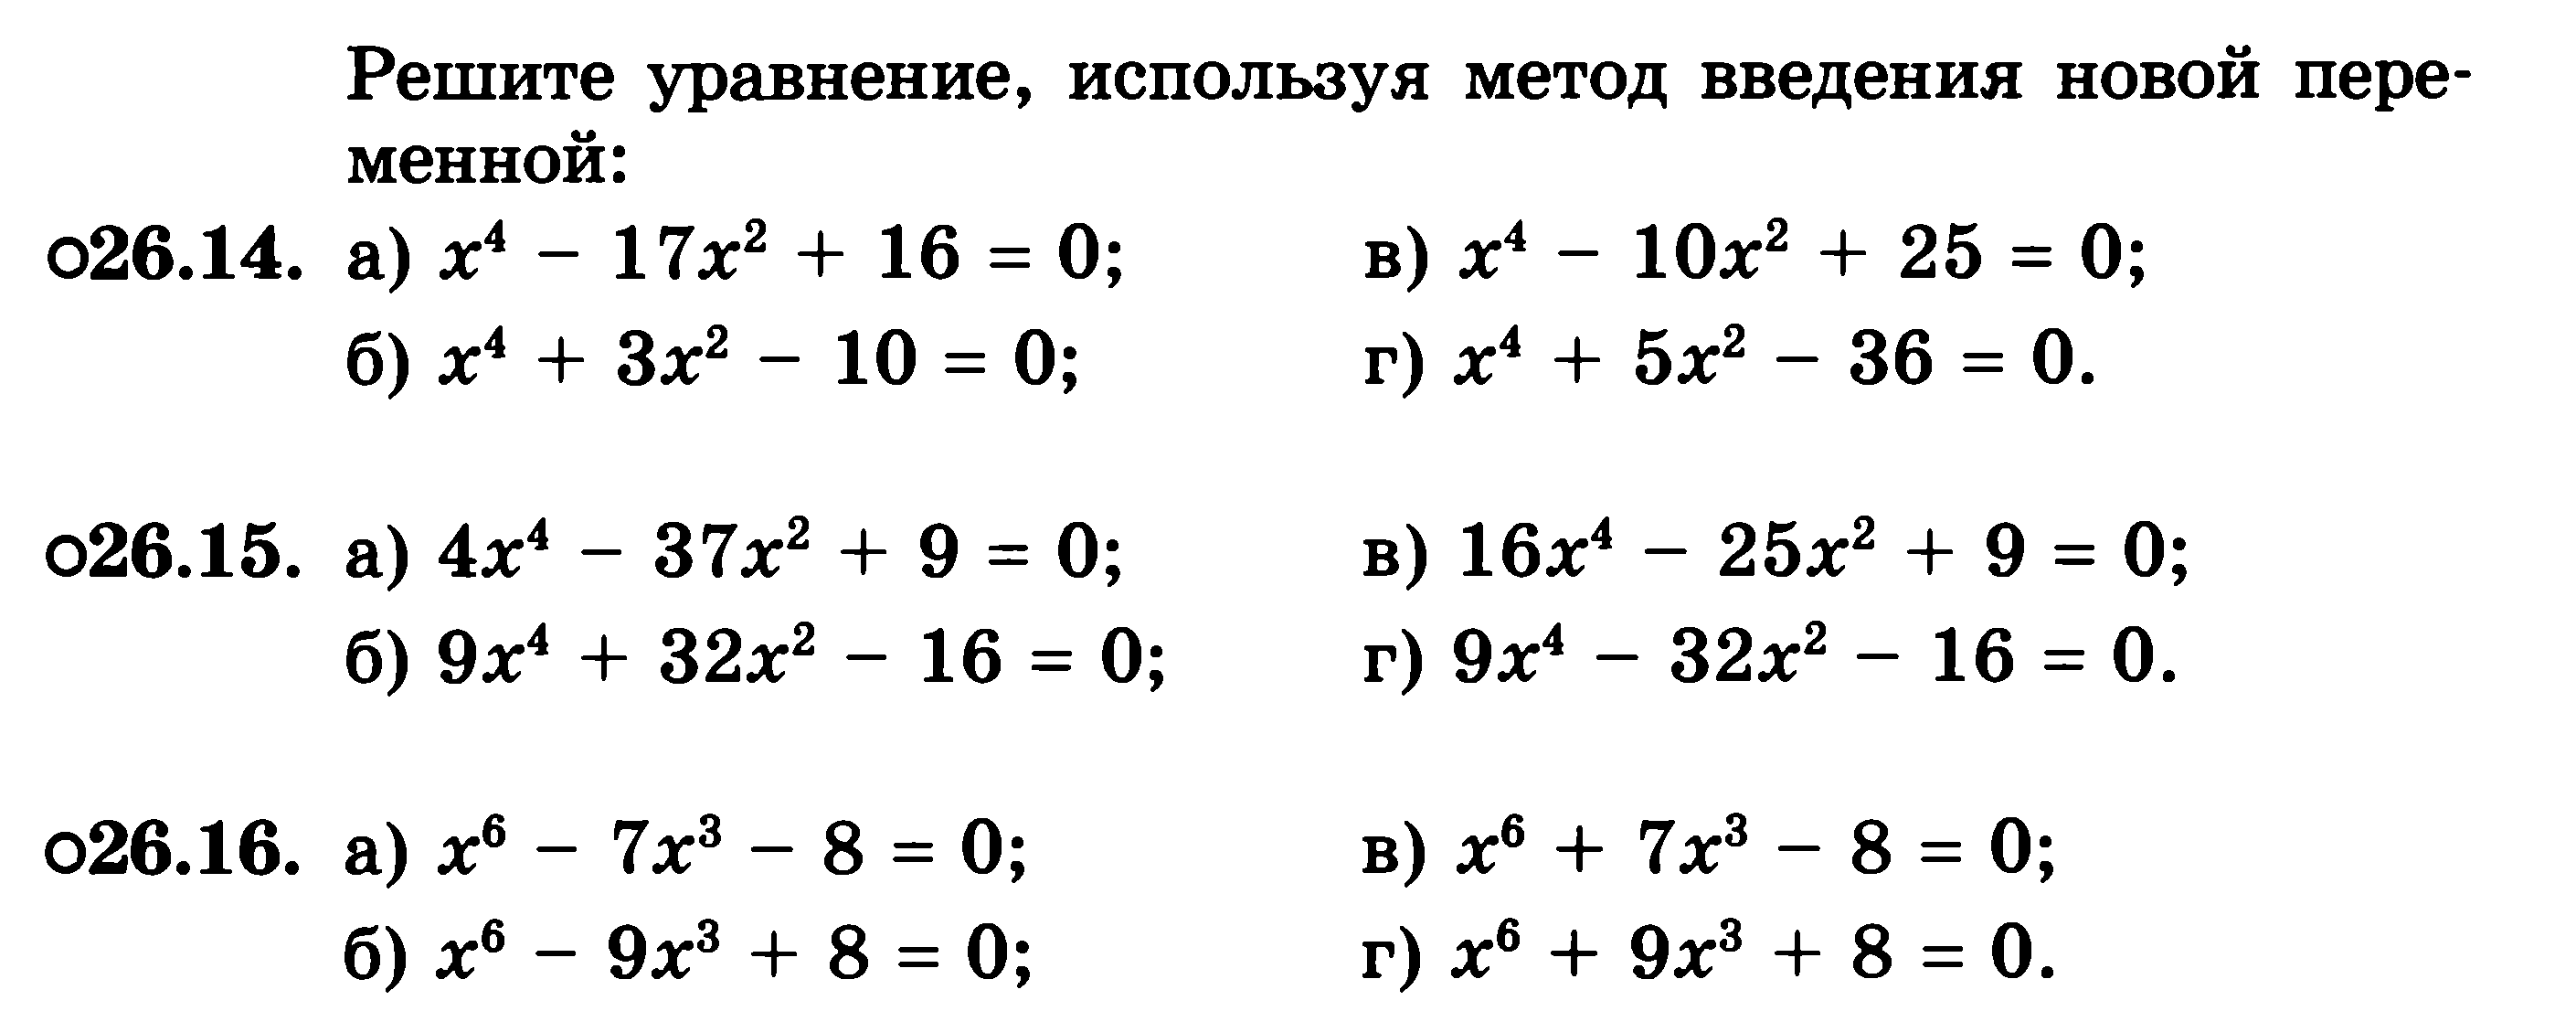 Алгебра 8 класс биквадратное уравнение